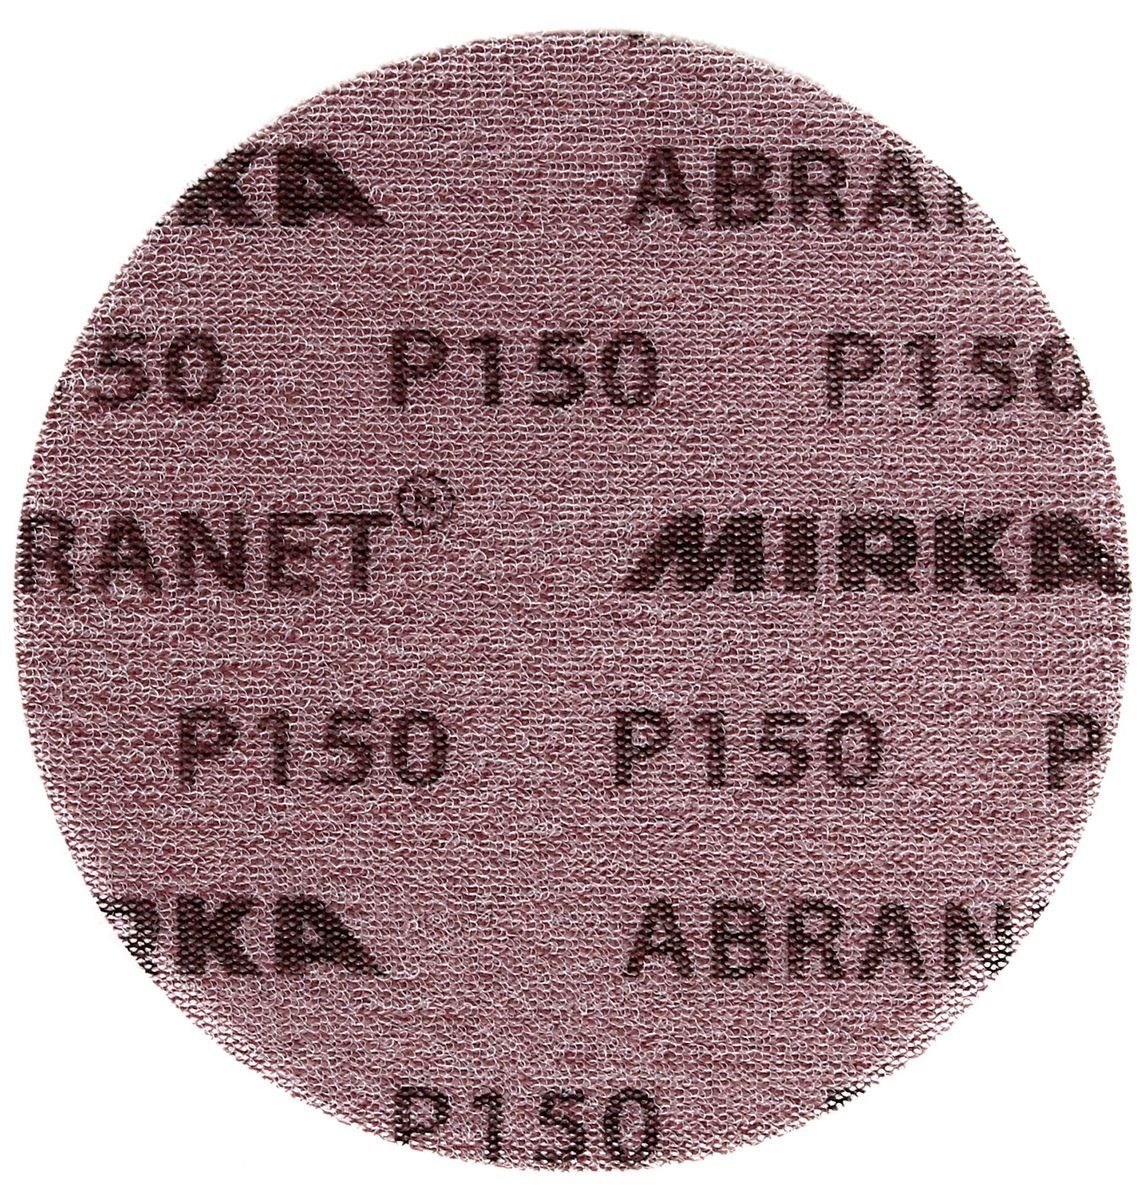 Grip Mirka ABRANET 50 (5424105015) Schleifscheibe P150 Stk. 150mm Schleifscheiben